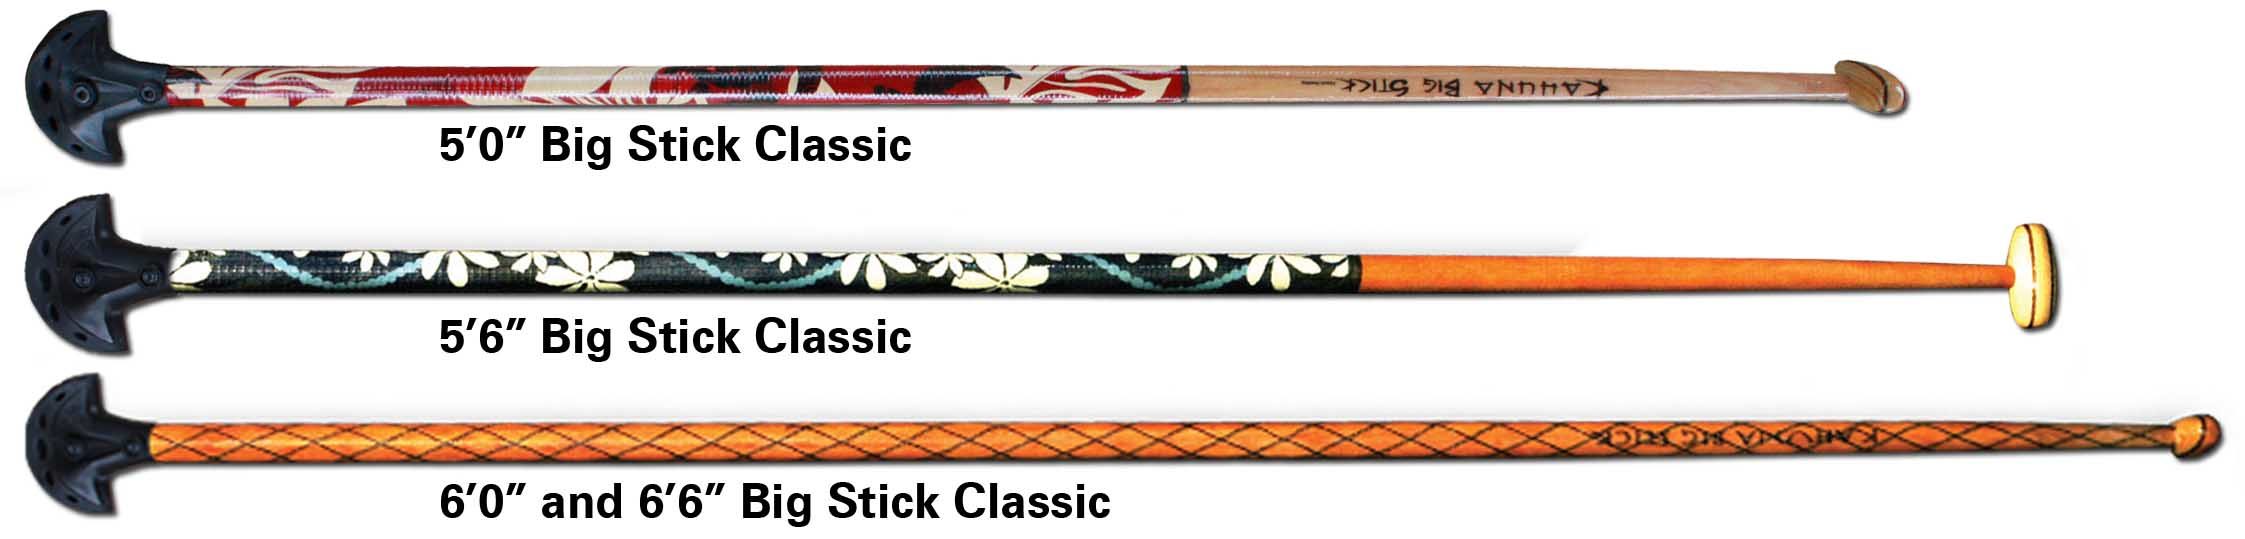 Kahuna Big Stick Classic